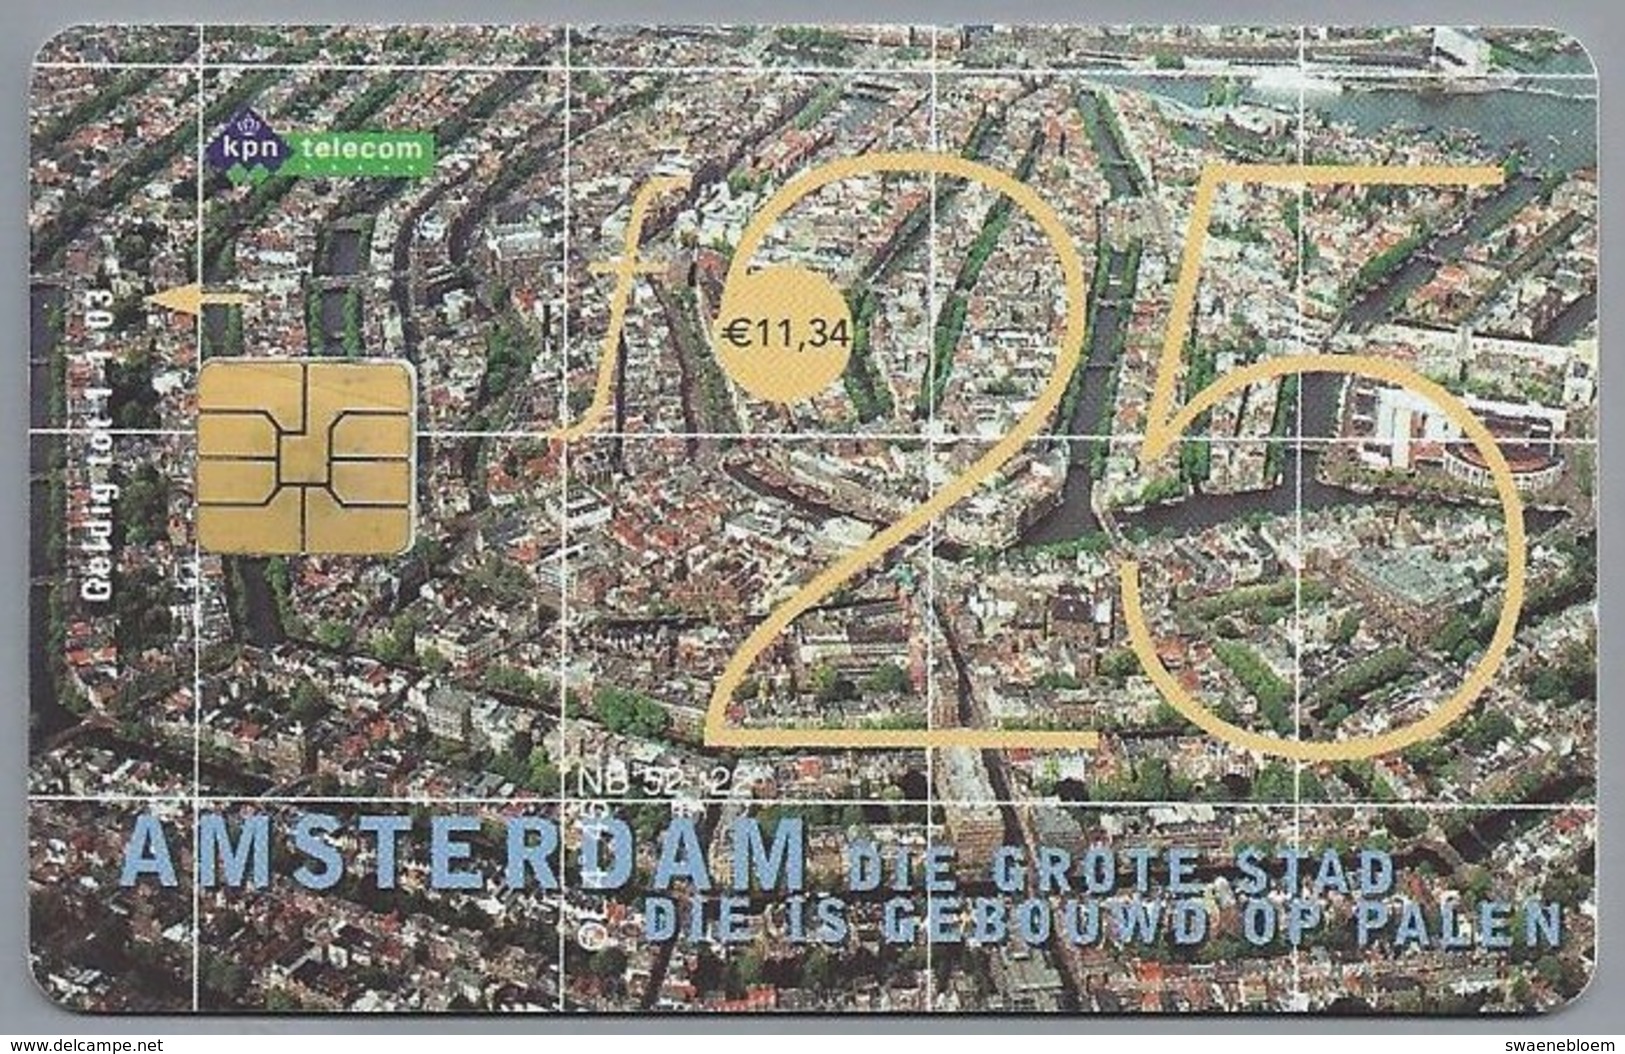 NL.- Telefoonkaart. PTT Telecom. 25 Gulden. AMSTERDAM Die Grote Stad Die Is Gebouwd Op Palen. Kalverstraat A402 - Reclame